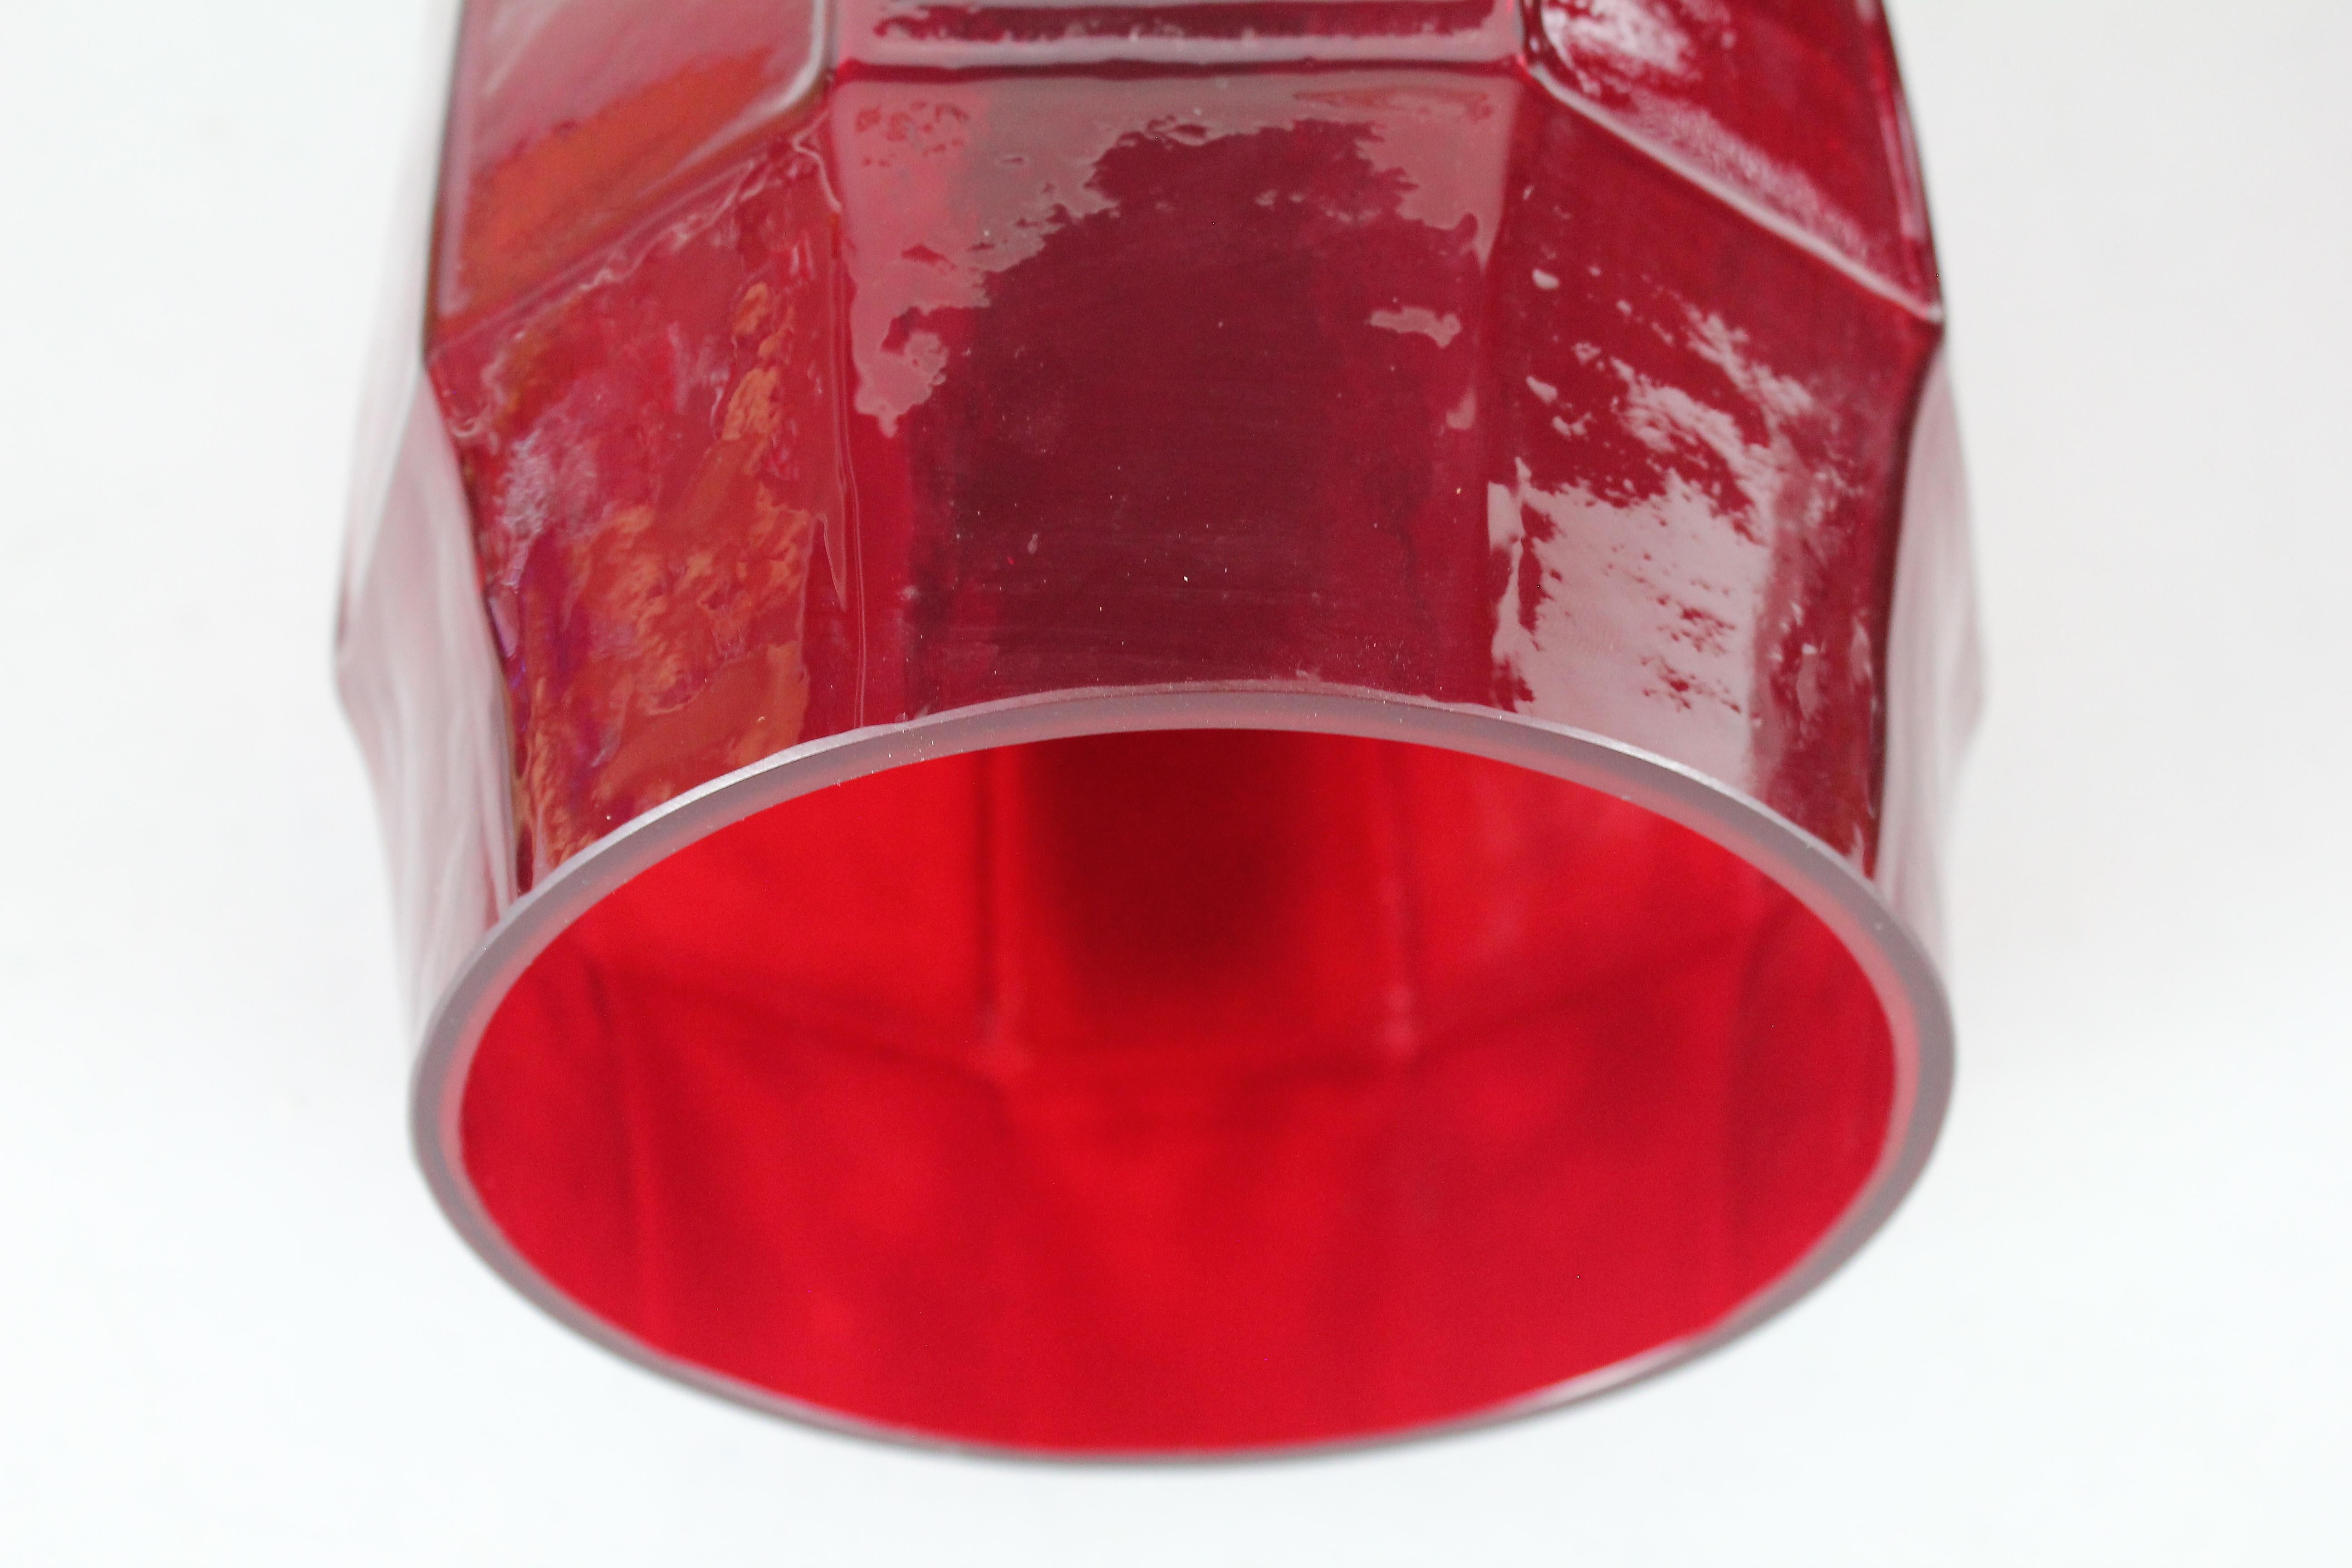 Christer Sjögren for Lindshammar, Tall Ruby Red Glass Vases, Sweden, 1960s For Sale 2